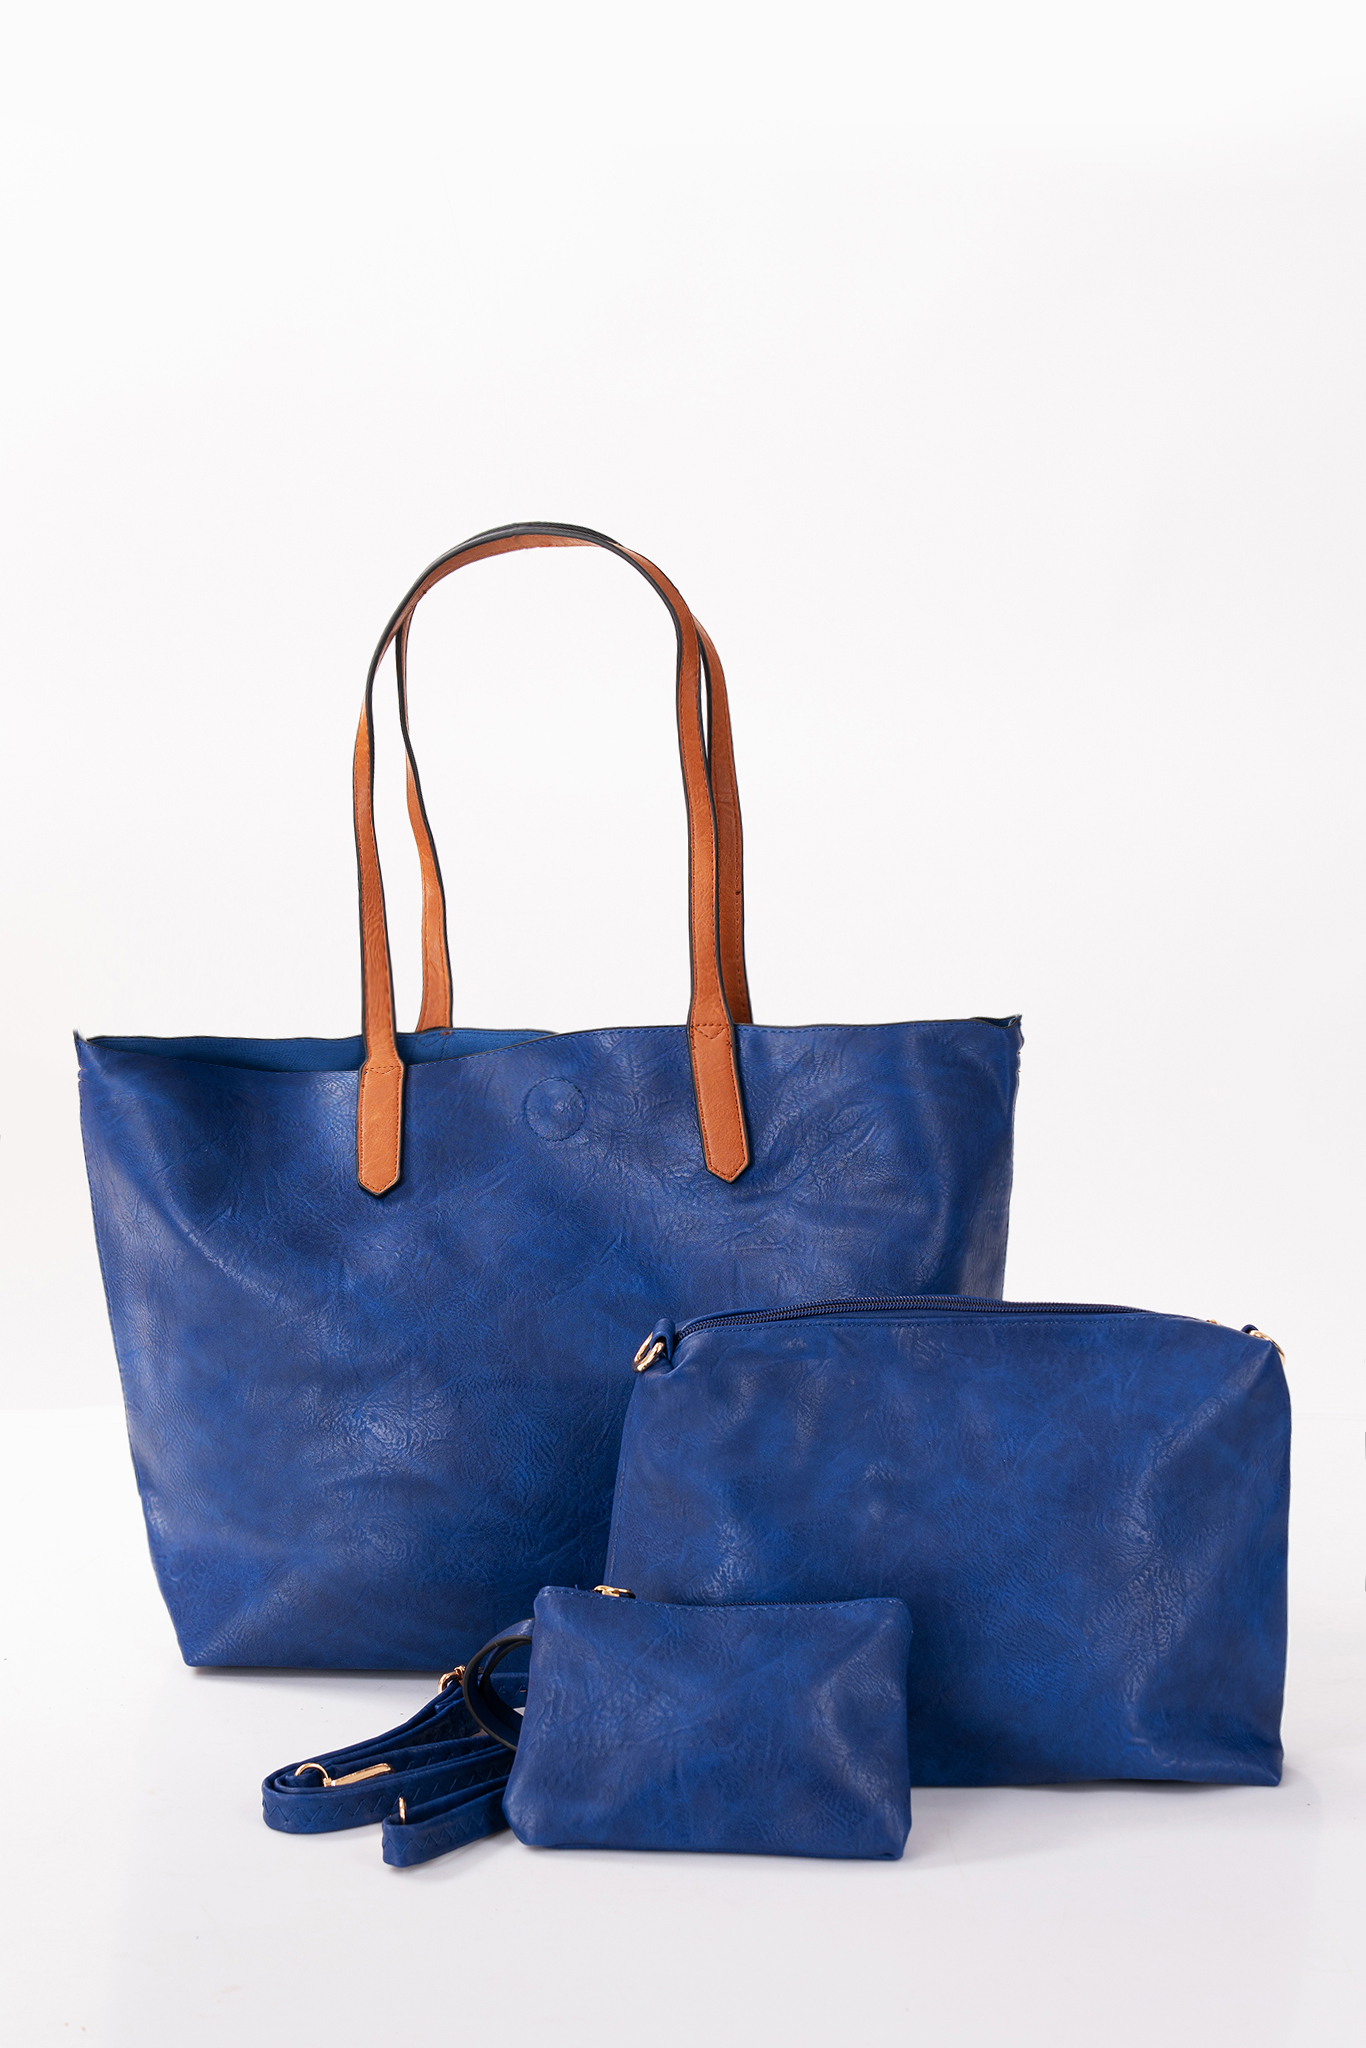 Дамска голяма чанта 3в1 в индигово синьо